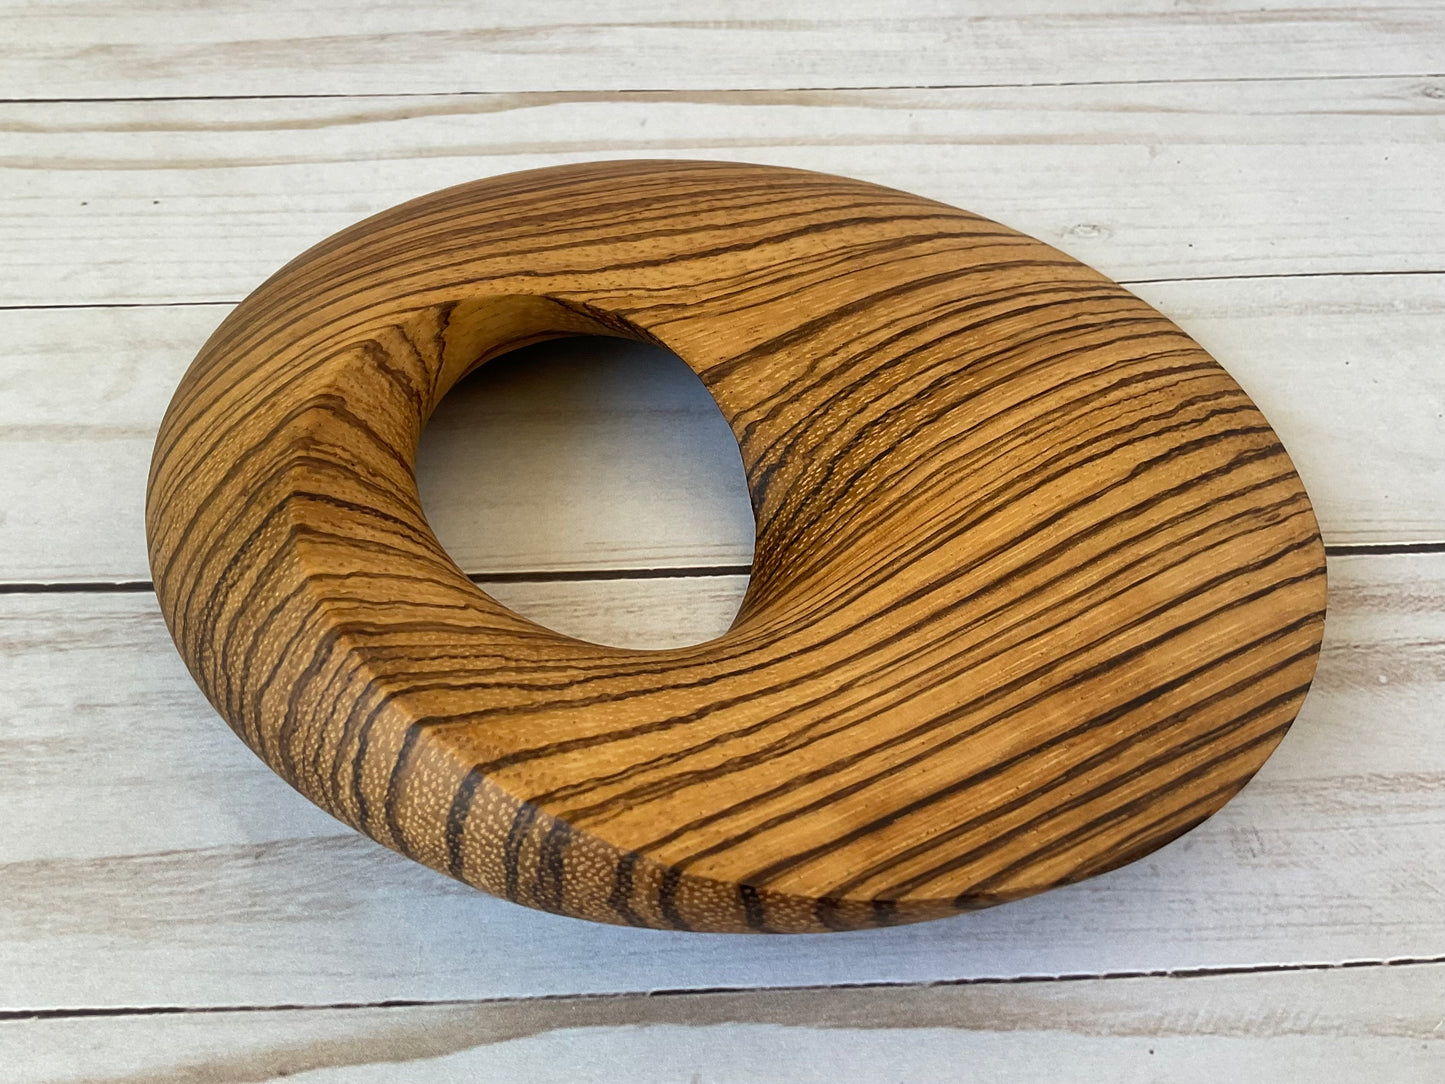 Möbius Strip Wooden Sculpture, Zebrawood, 7"